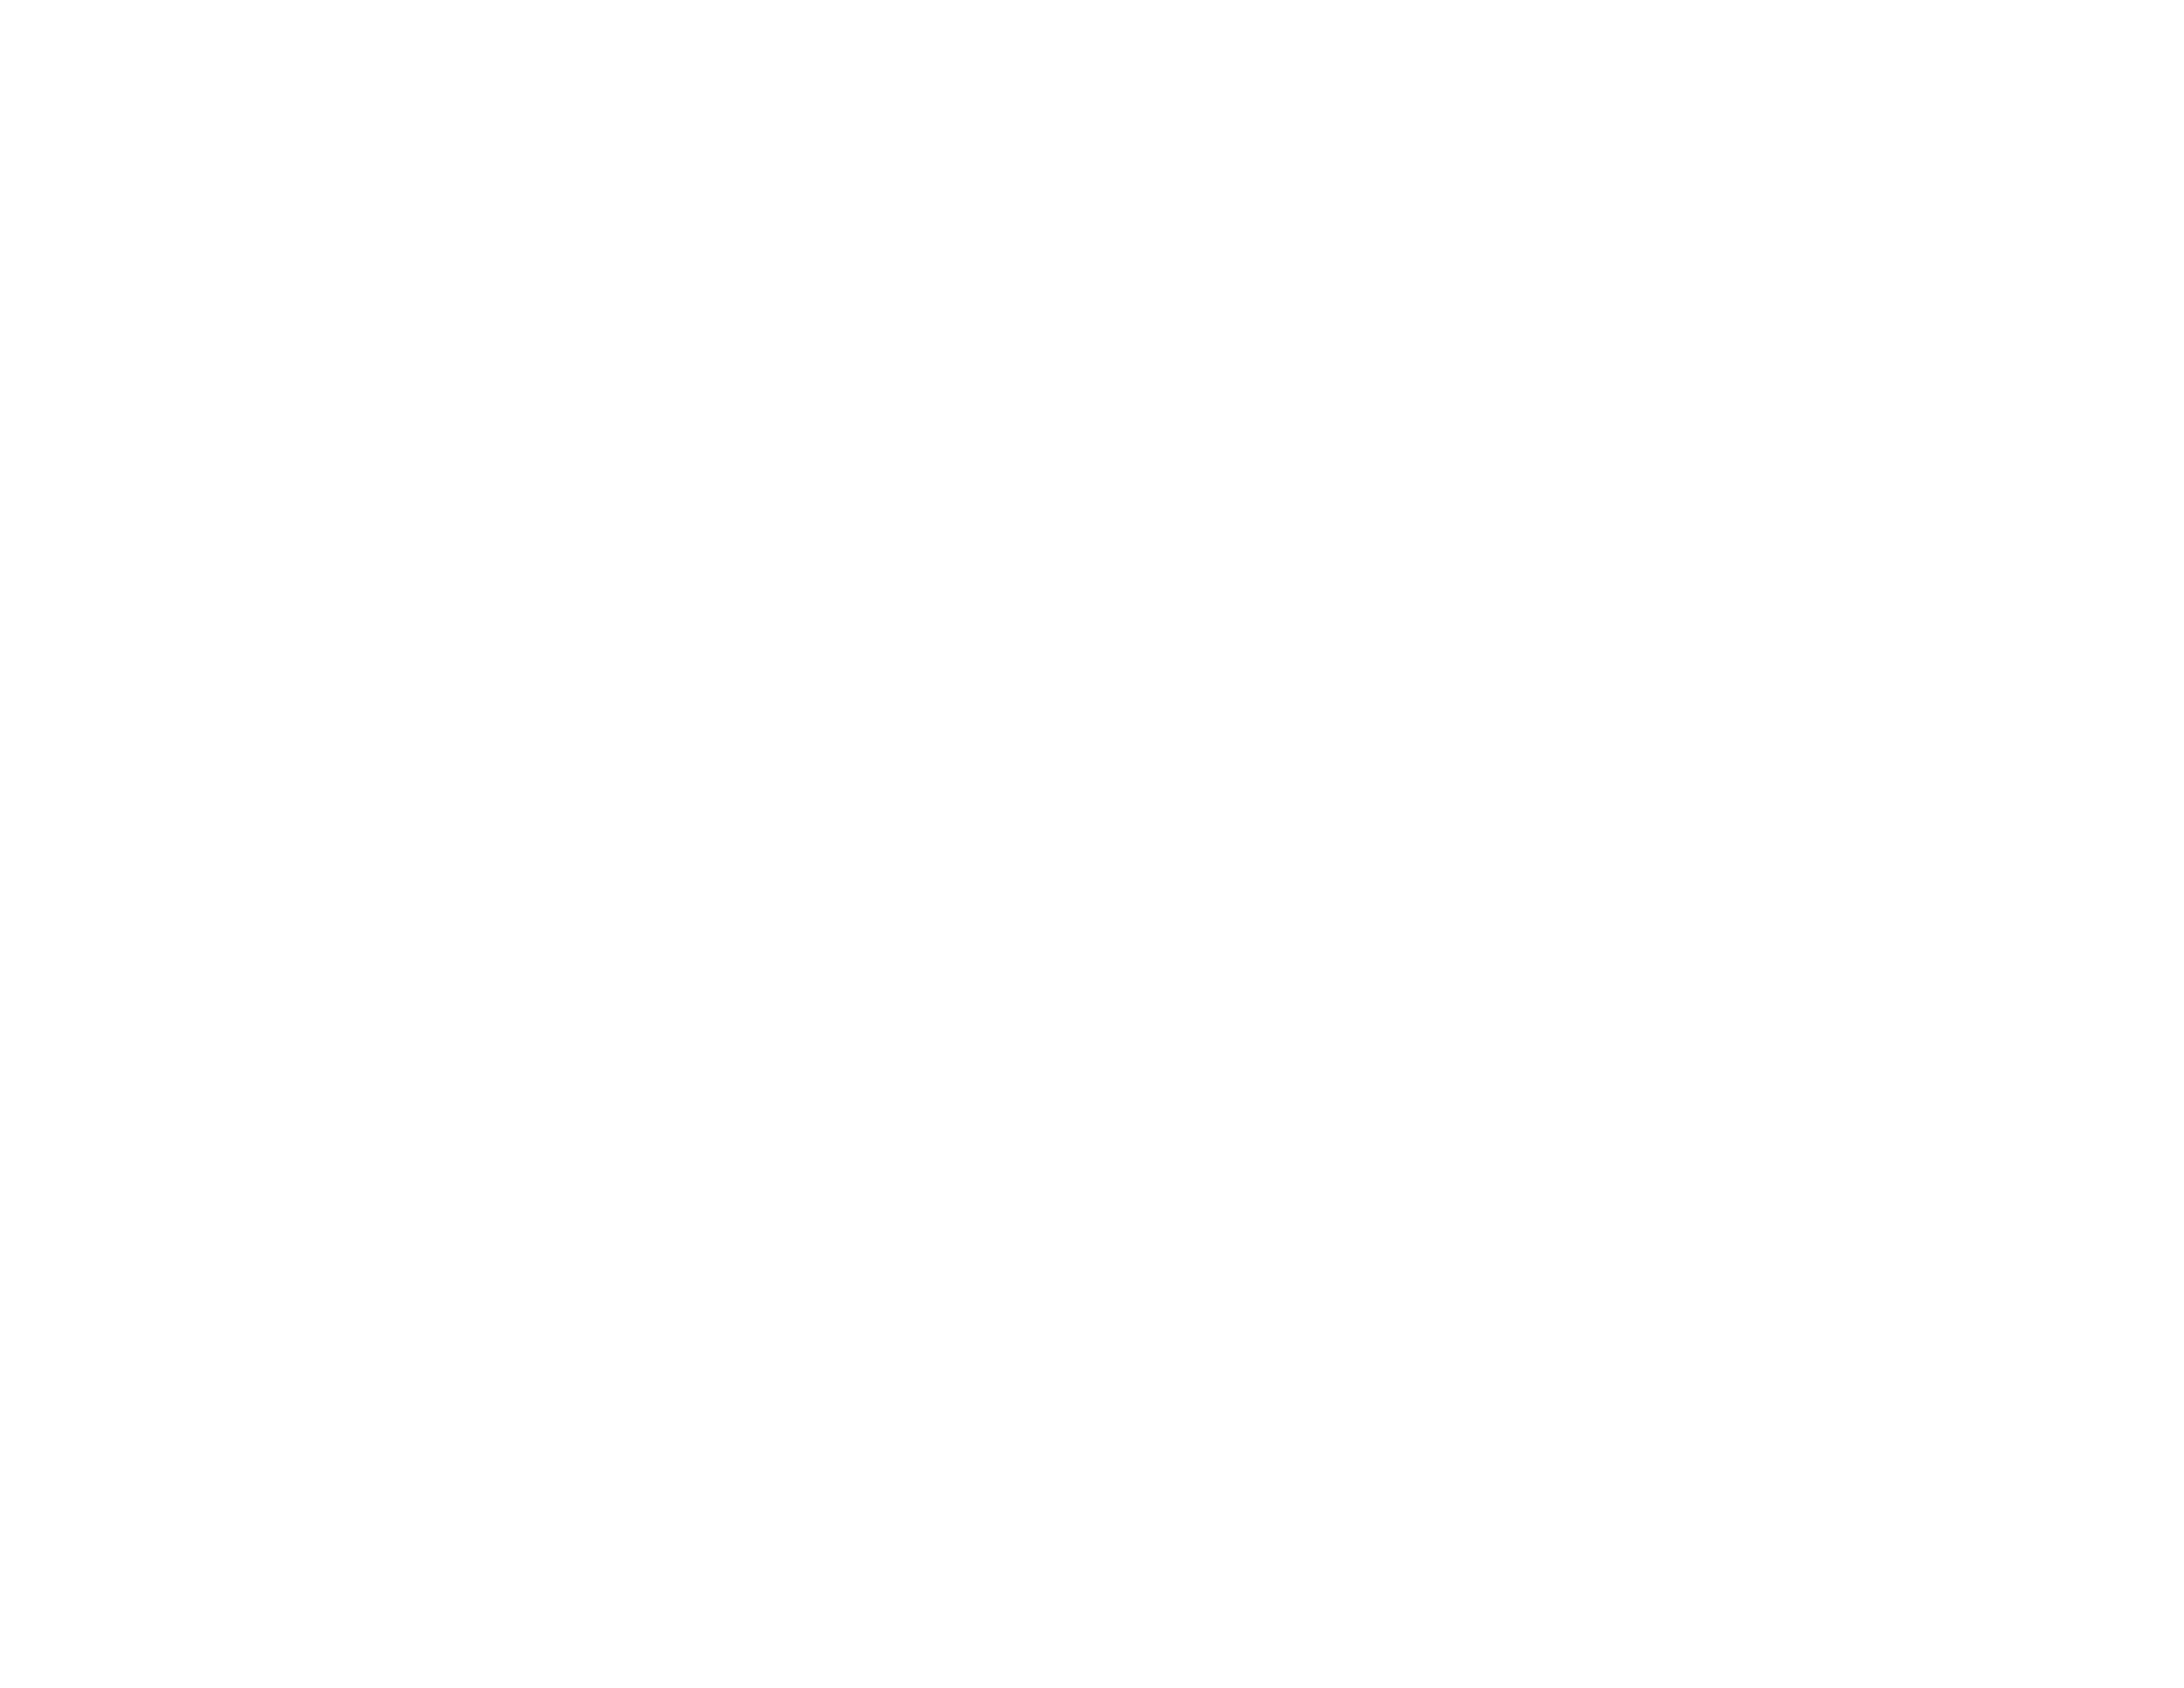 Central Valley Brewfest